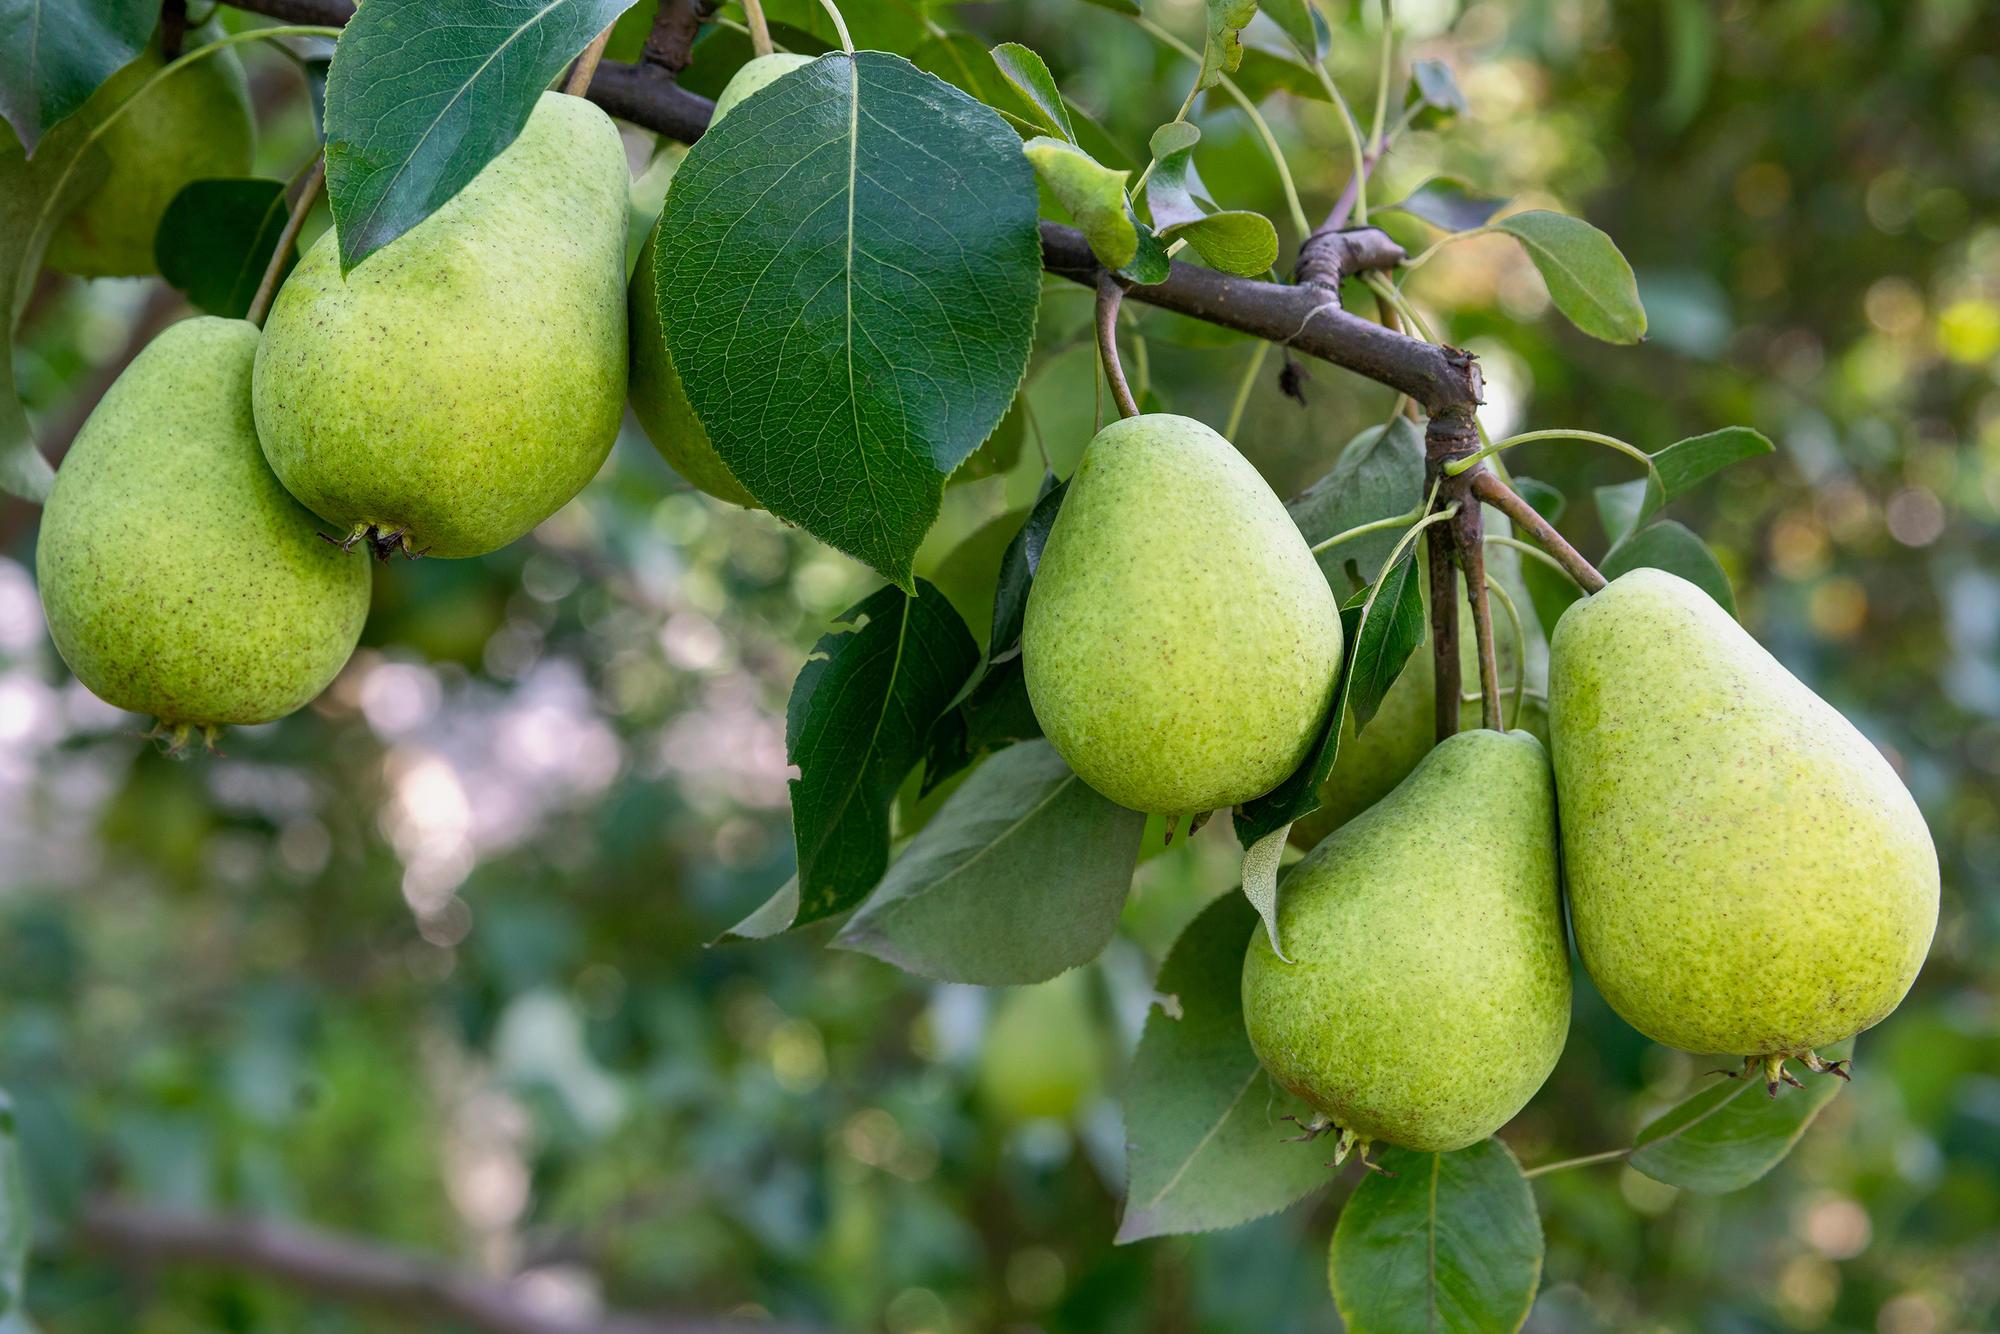 A pear tree.